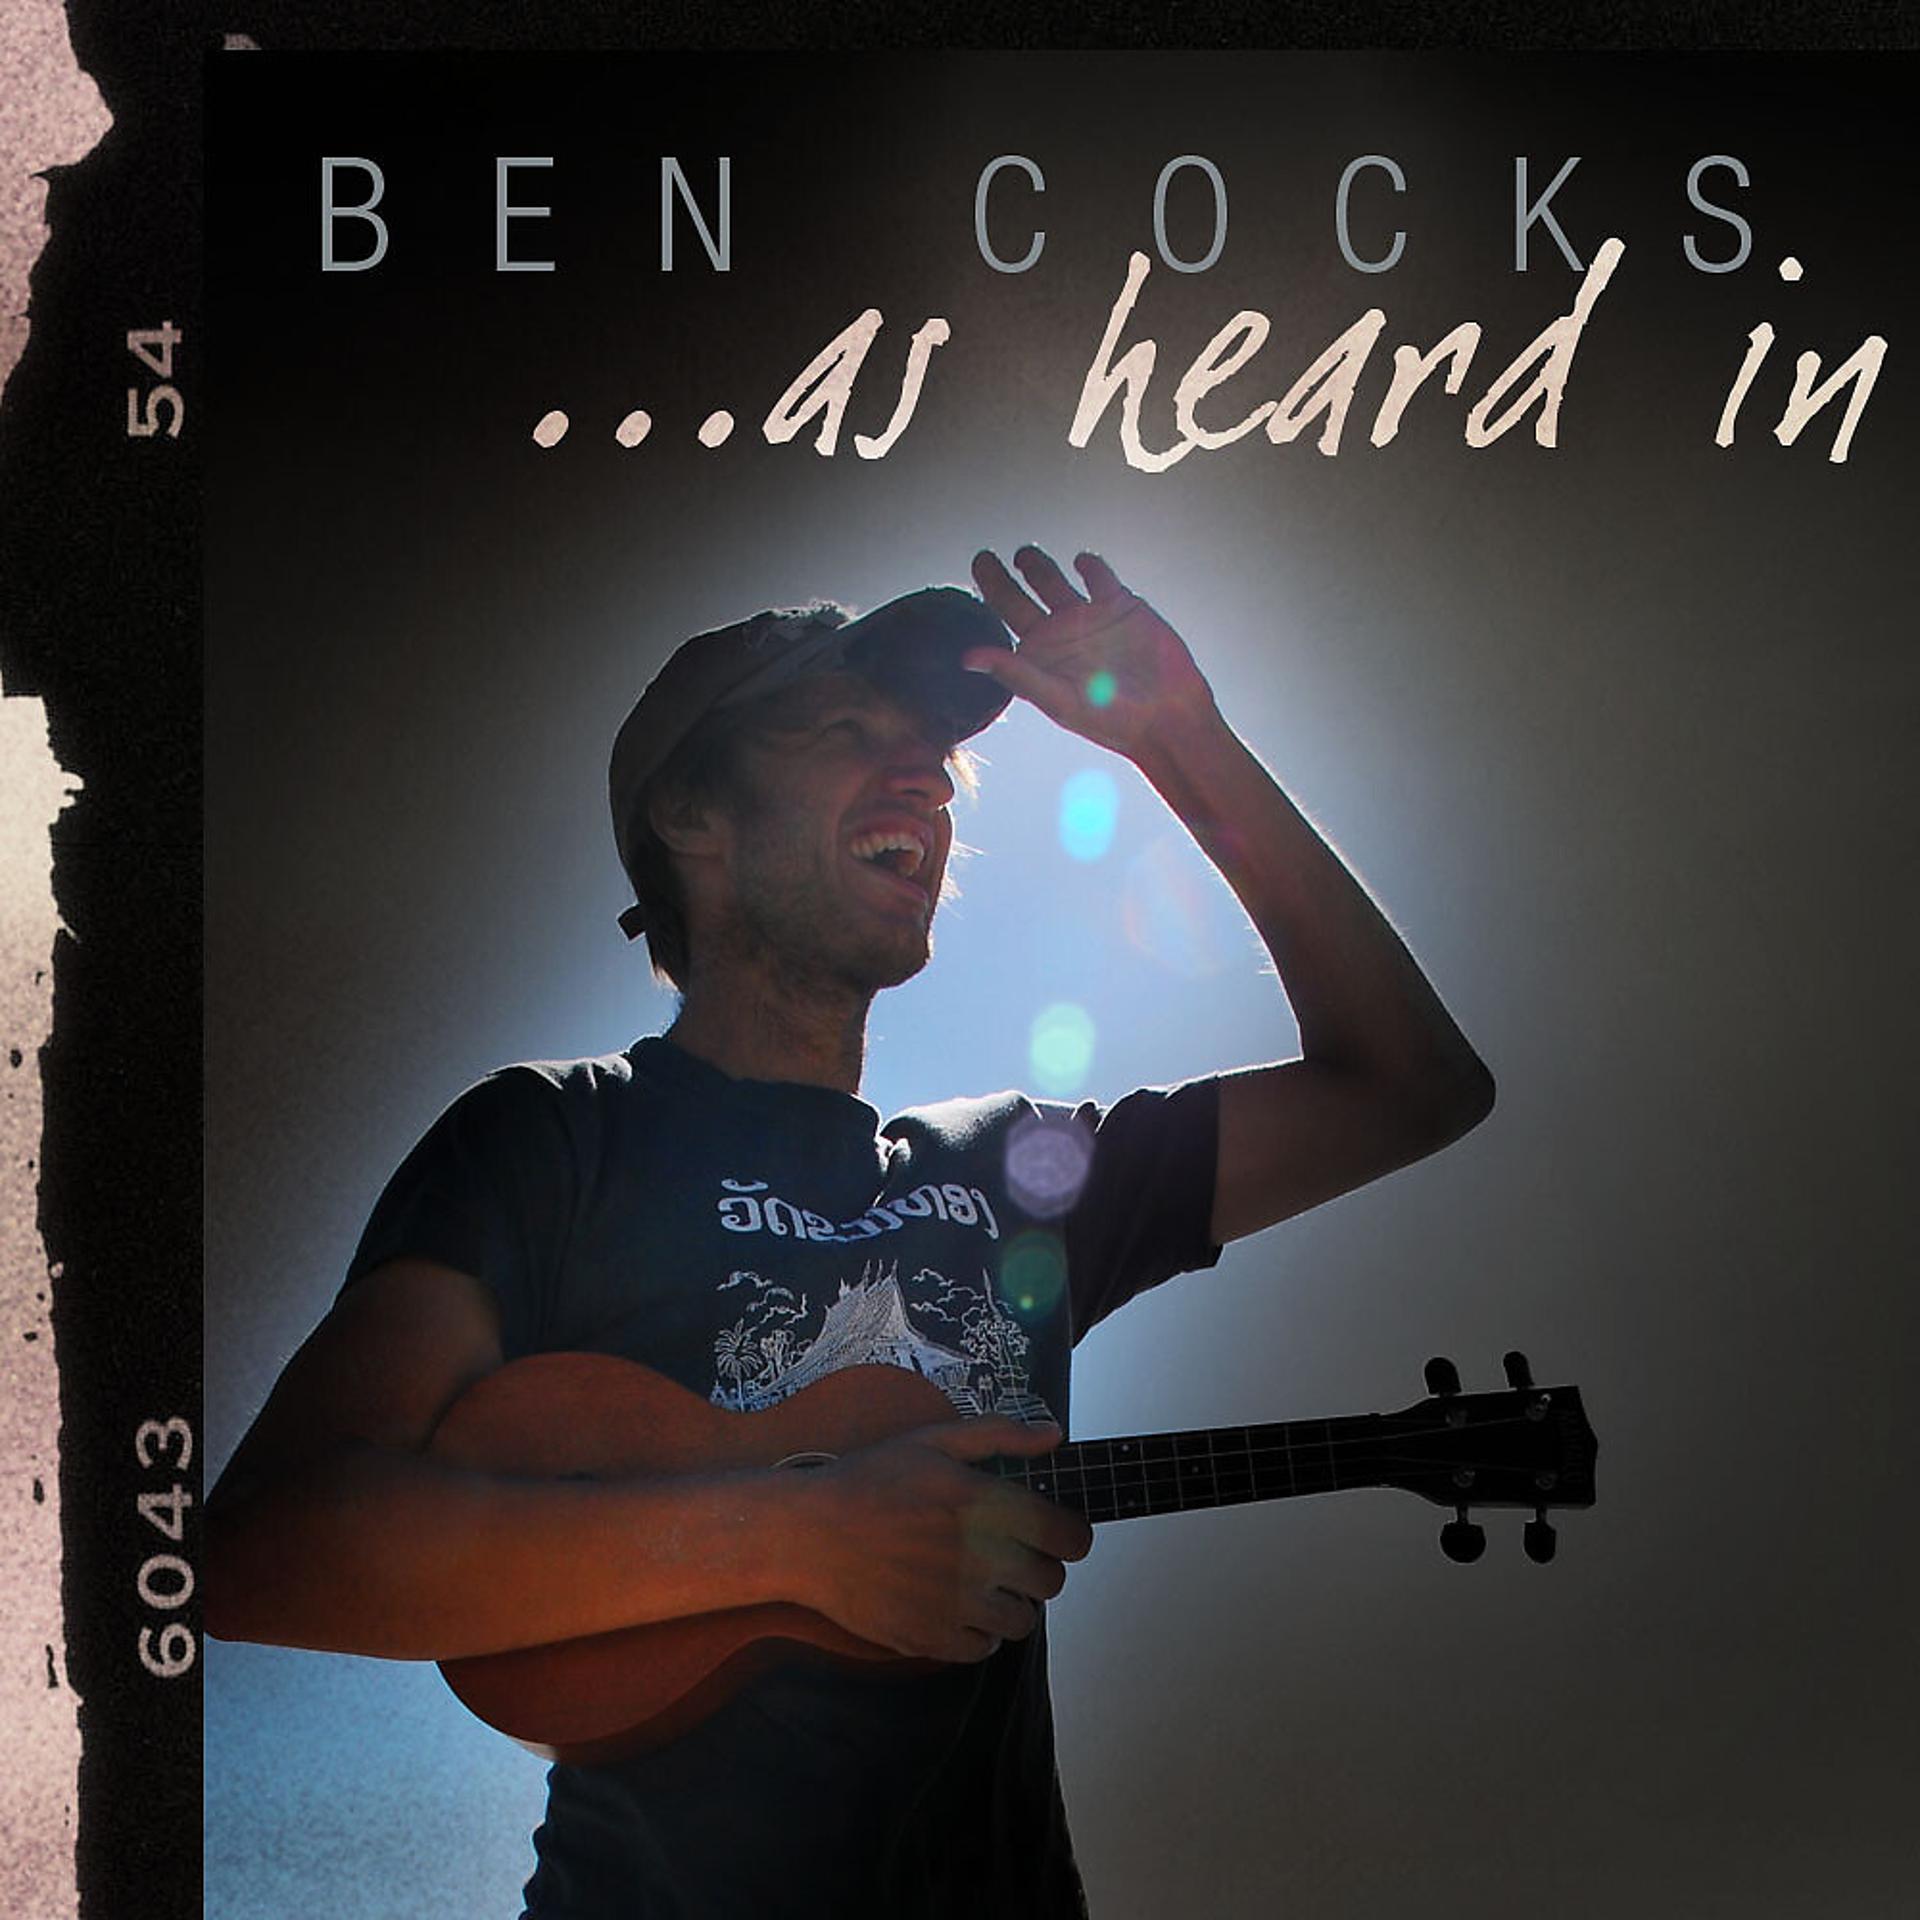 Ben cocks. Ben cocks so Cold. So Cold Ben Clock. "Ben cocks" && ( исполнитель | группа | музыка | Music | Band | artist ) && (фото | photo).